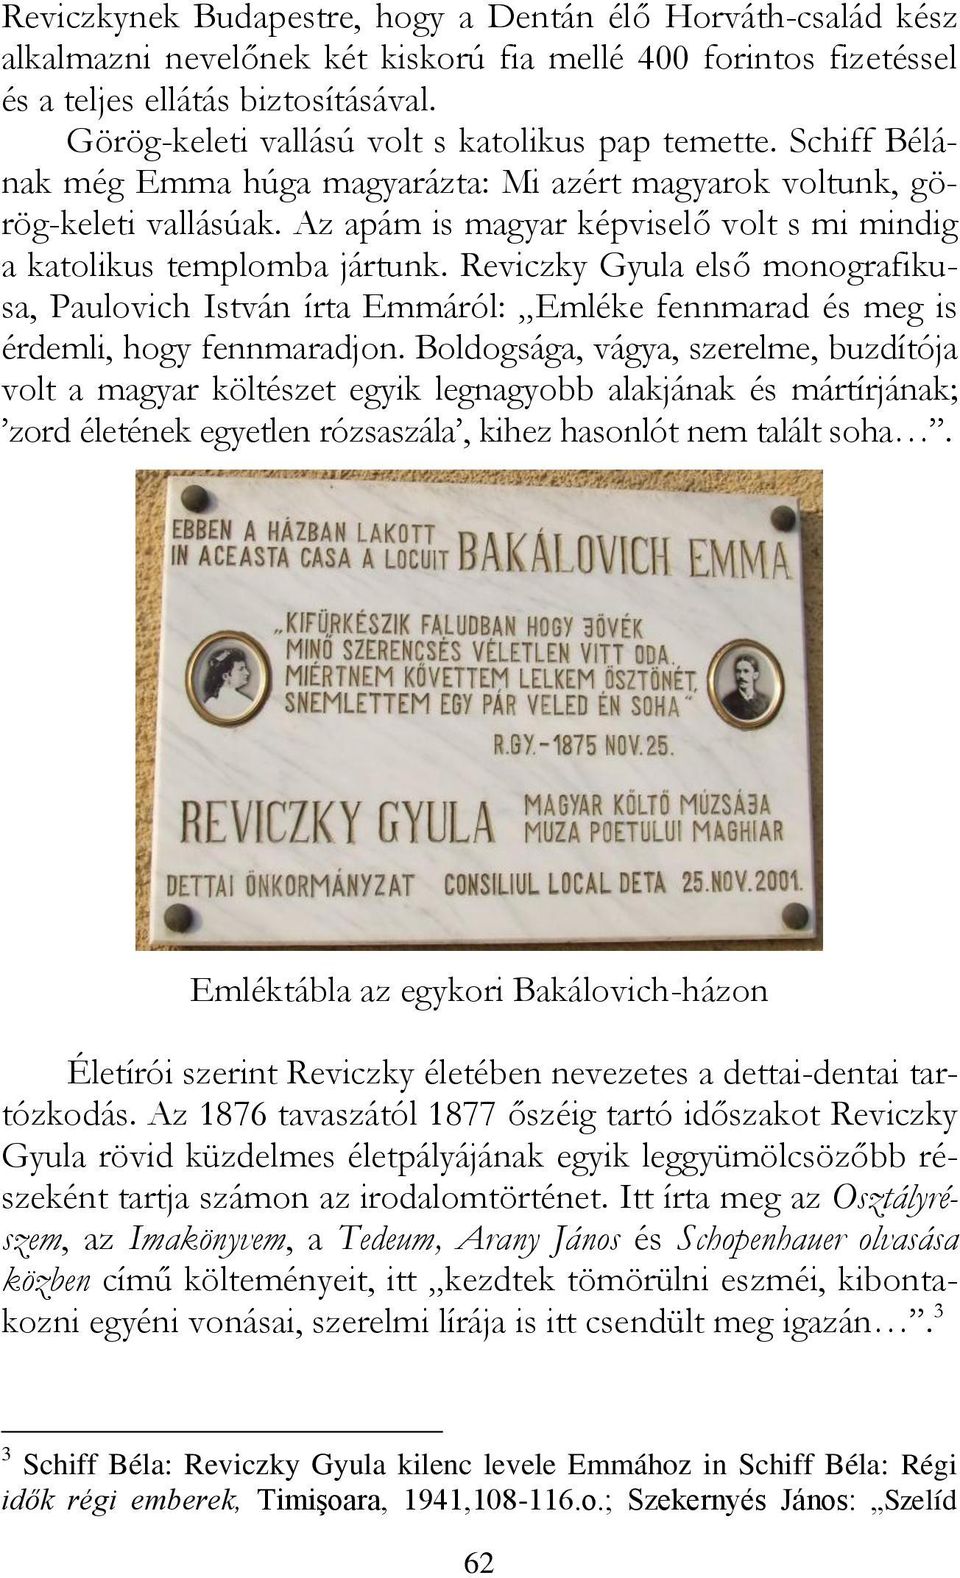 Az apám is magyar képviselő volt s mi mindig a katolikus templomba jártunk. Reviczky Gyula első monografikusa, Paulovich István írta Emmáról: Emléke fennmarad és meg is érdemli, hogy fennmaradjon.